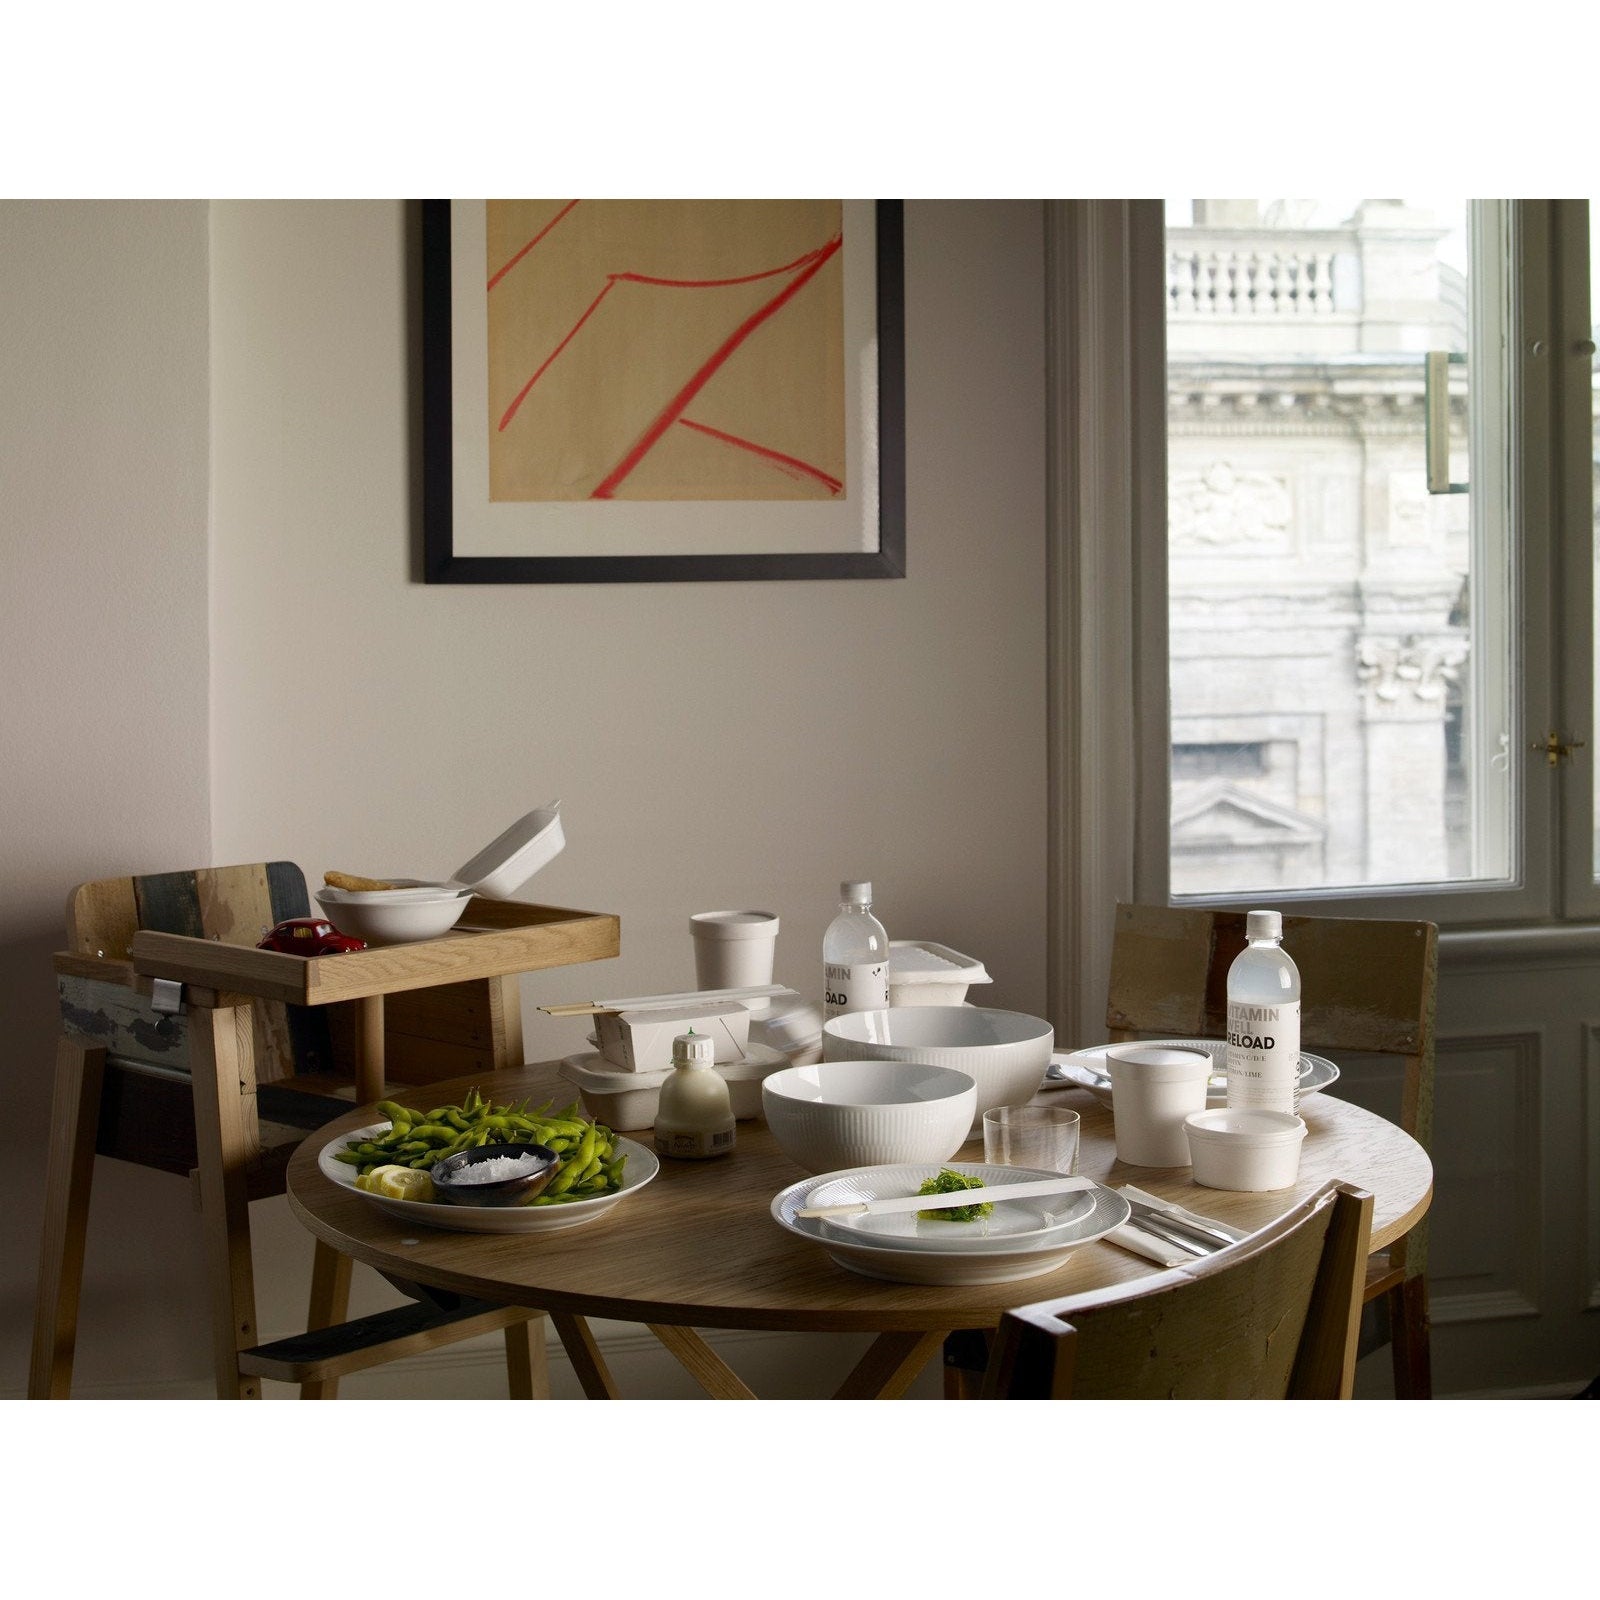 Royal Copenhagen Assiette à canneaux blancs, 22 cm